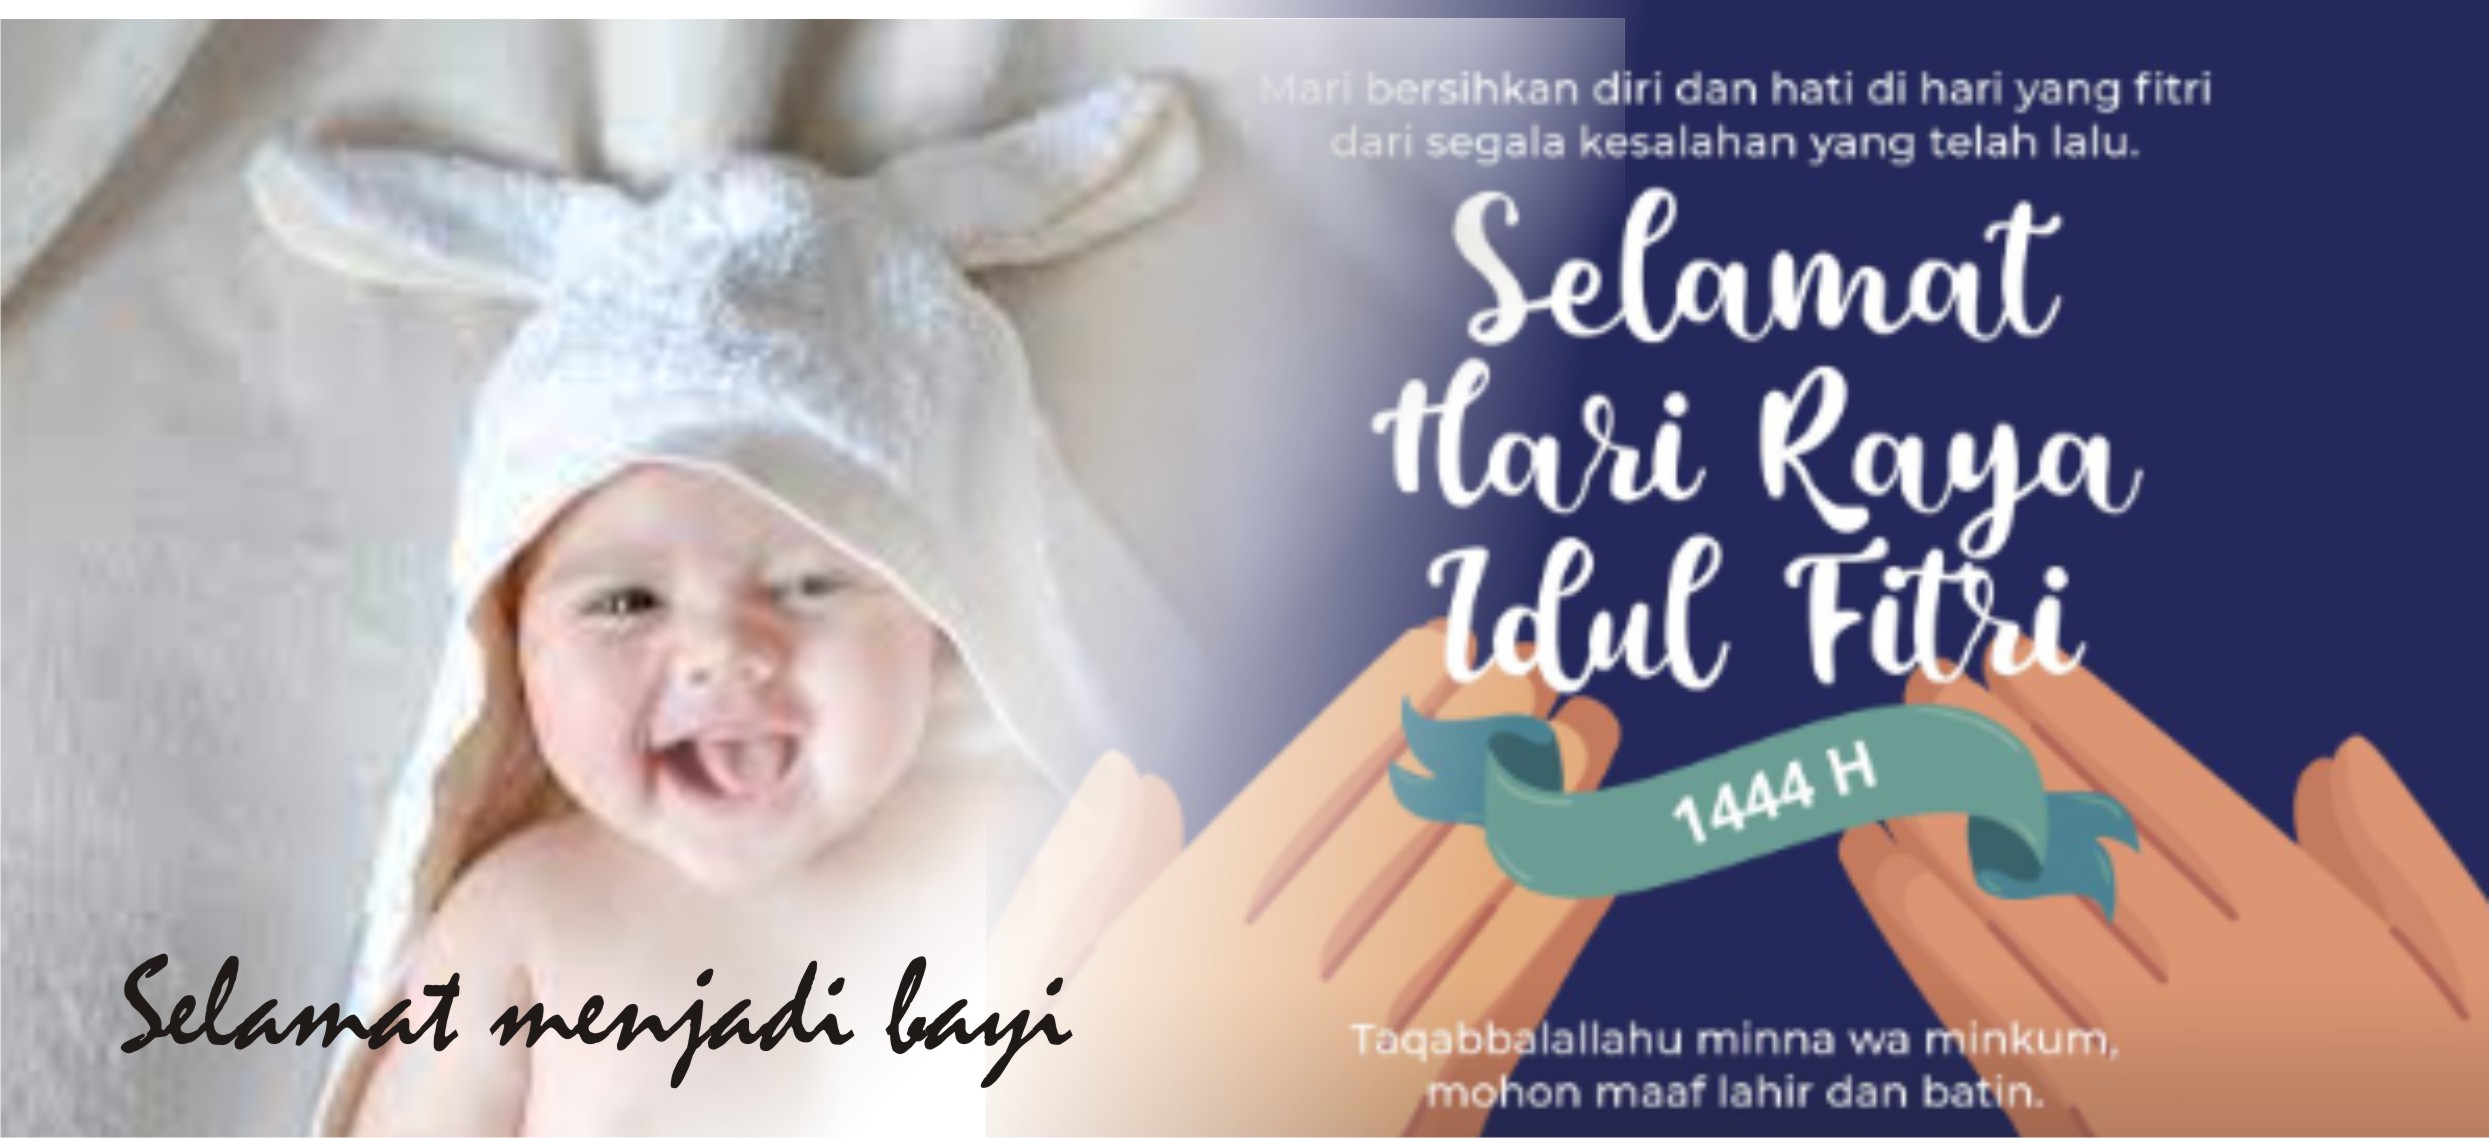 1. Hr raya Menjadi Bayi Suara Utama ID Mengabarkan Kebenaran | Website Resmi Suara Utama